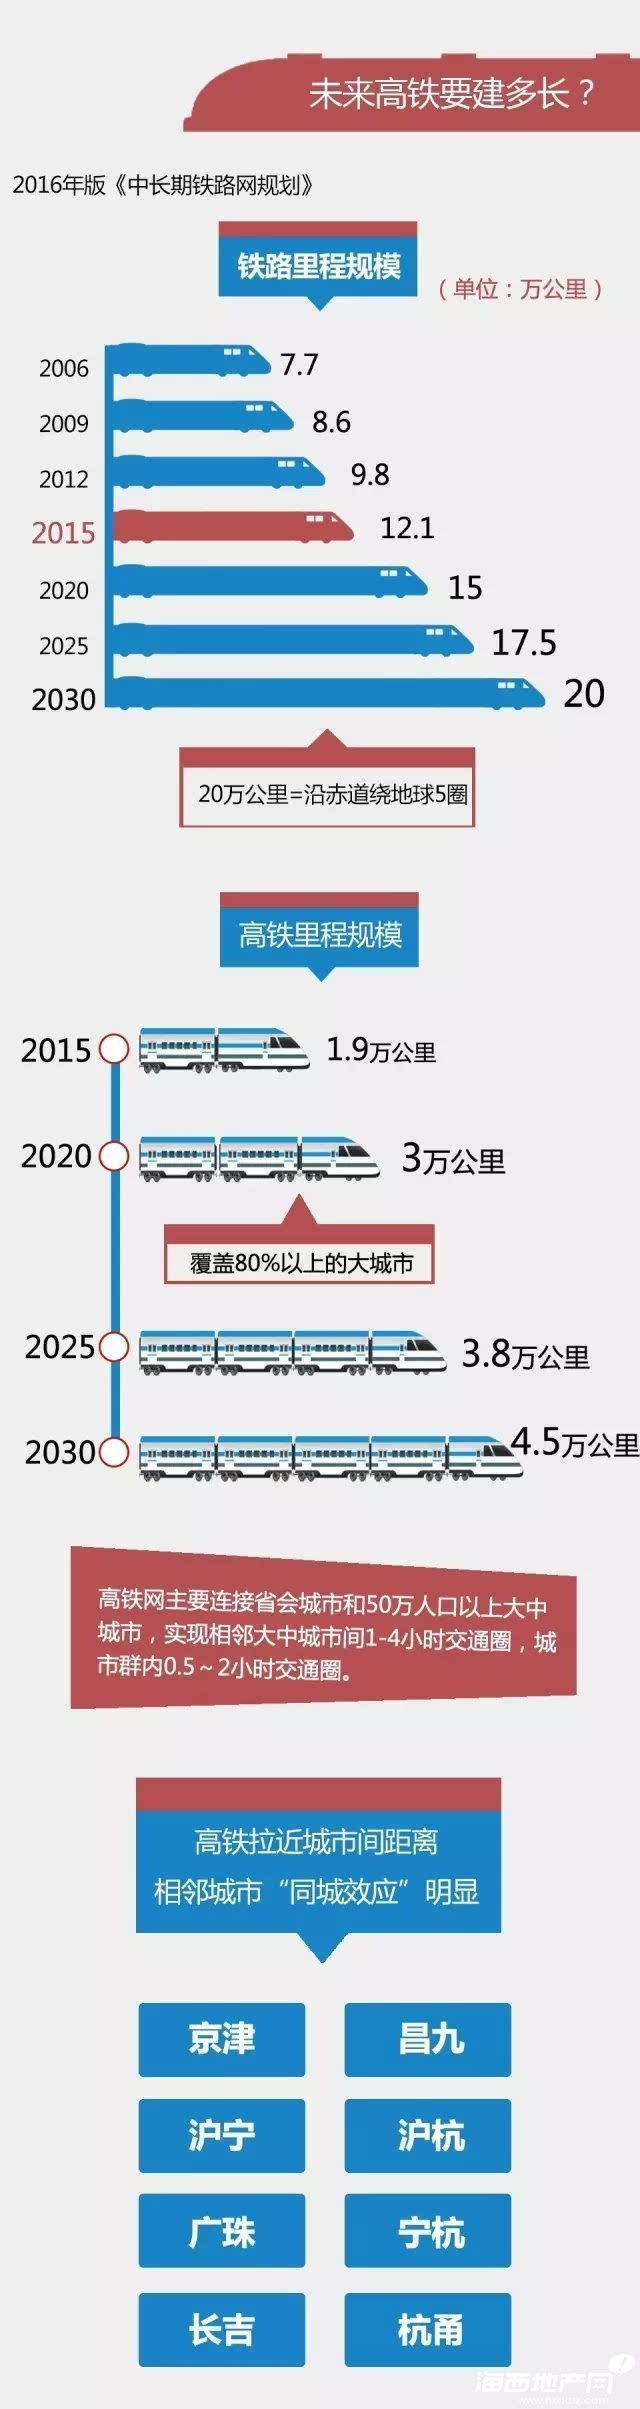 英雄联盟的下注网站:：中国铁路“走出去”市场研究